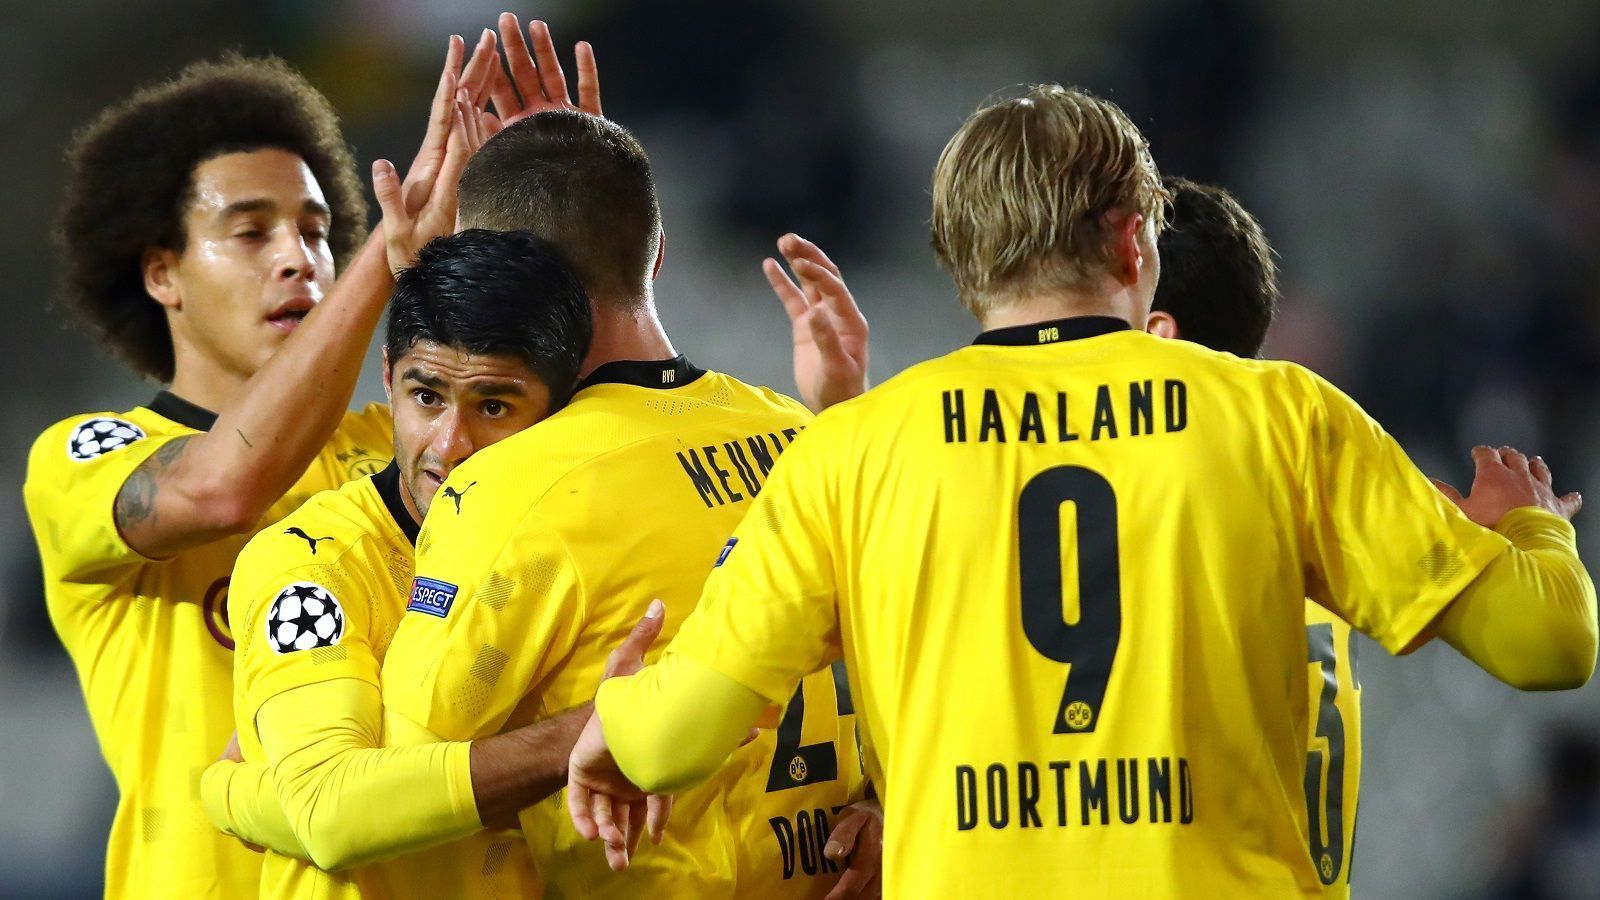 
                <strong>Platz 4: Borussia Dortmund</strong><br>
                3:0, 2:0, 2:0, 3:0, 5:2 - die letzten Wochen war der BVB recht erfolgreich, mit Ausnahme des 2:3 gegen die Bayern. Aber auch im deutschen Clasico war Dortmund auf Augenhöhe mit den Münchnern. Erling Haaland schießt nach wie vor alles kurz und klein, die Balance zwischen Defensive und Offensive bekommt Dortmund immer besser hin. In der letzten Saison gab es immer wieder teils unerklärliche Rückschläge, in dieser Spielzeit ist der BVB deutlich konstanter in seinen Leistungen. Und jetzt darf auch das große Versprechen Youssoufa Moukoko ran. Schwarz-Gelb ist dran, was Großes zu reißen in dieser Saison.
              